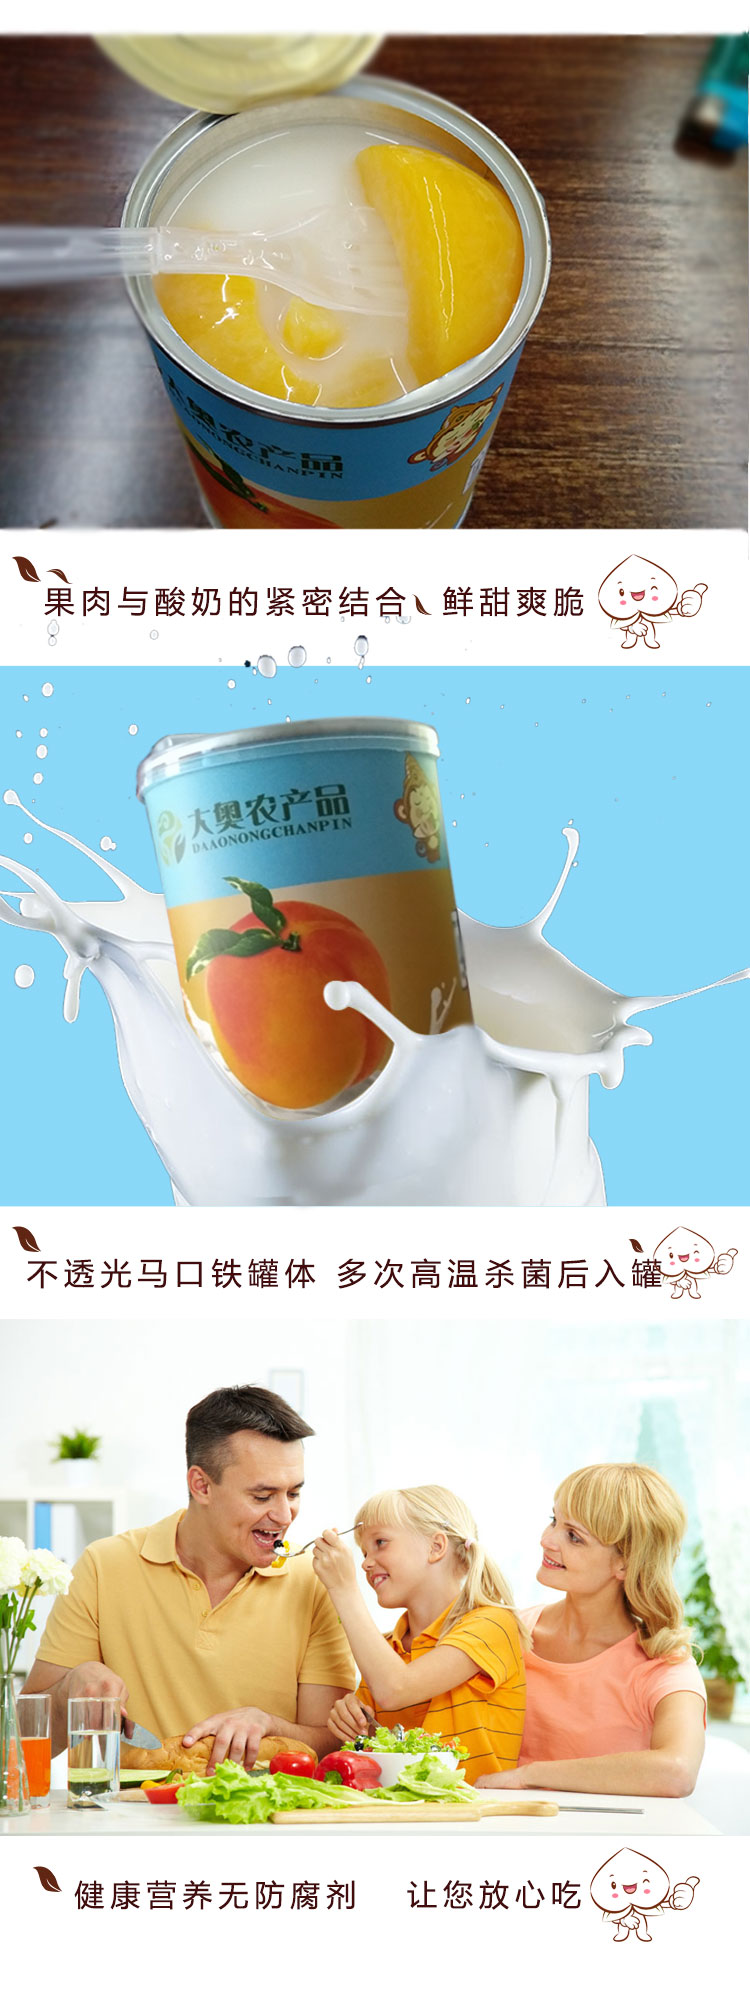 大奥农产品酸奶黄桃罐头